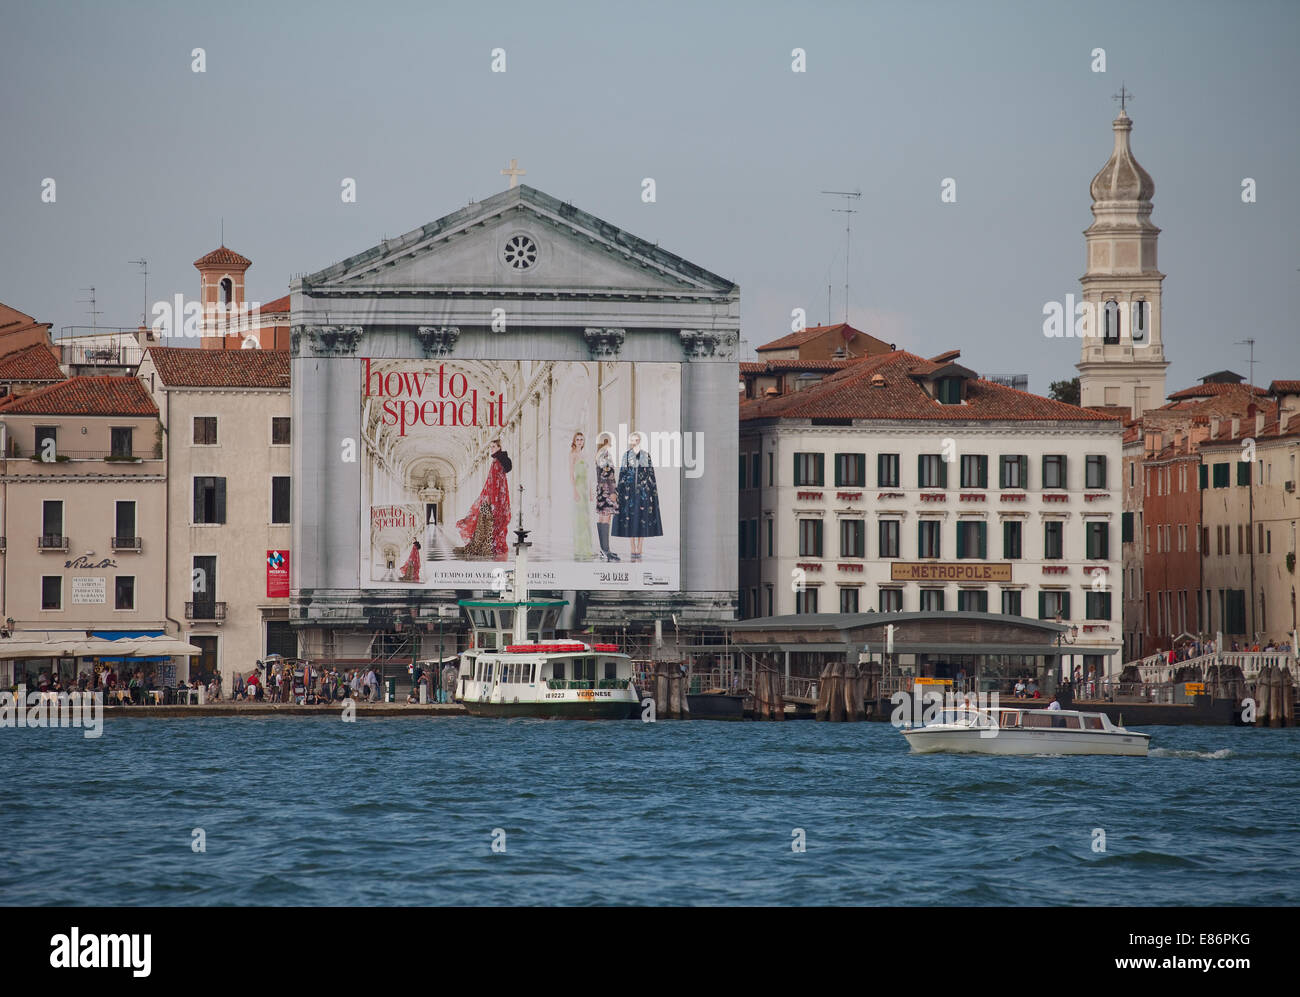 Grand canal, vu de l'île de San Giorgio Maggiore Venise classique des bateaux-bus, taxis, l'eau, des palais,et clochers,un Banque D'Images